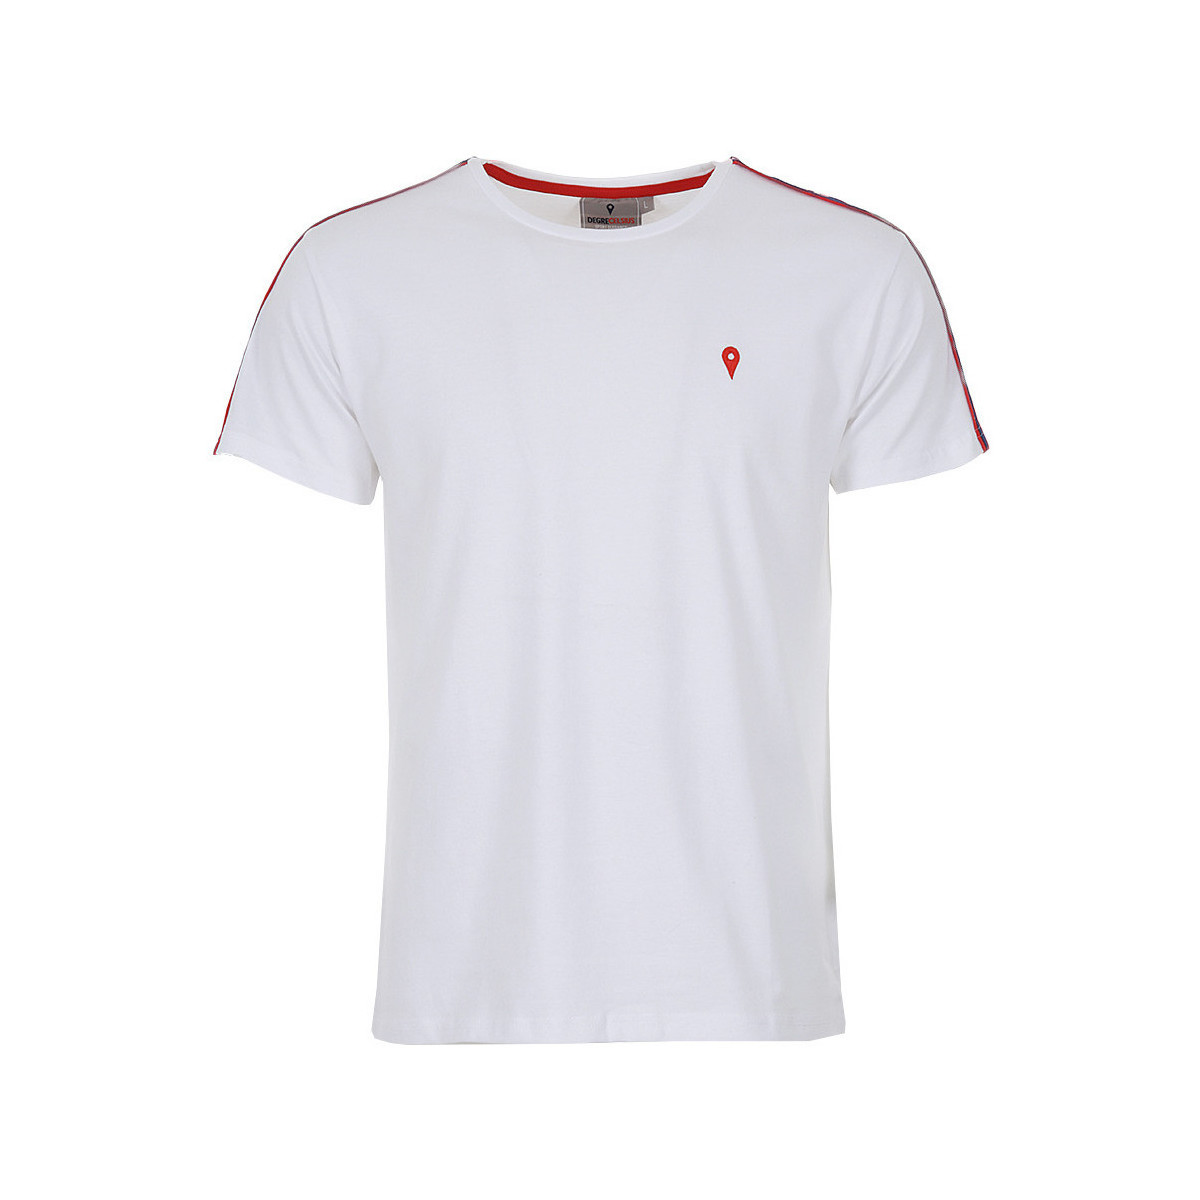 textil Hombre Camisetas manga corta Degré Celsius T-shirt manches courtes homme CRANER Blanco